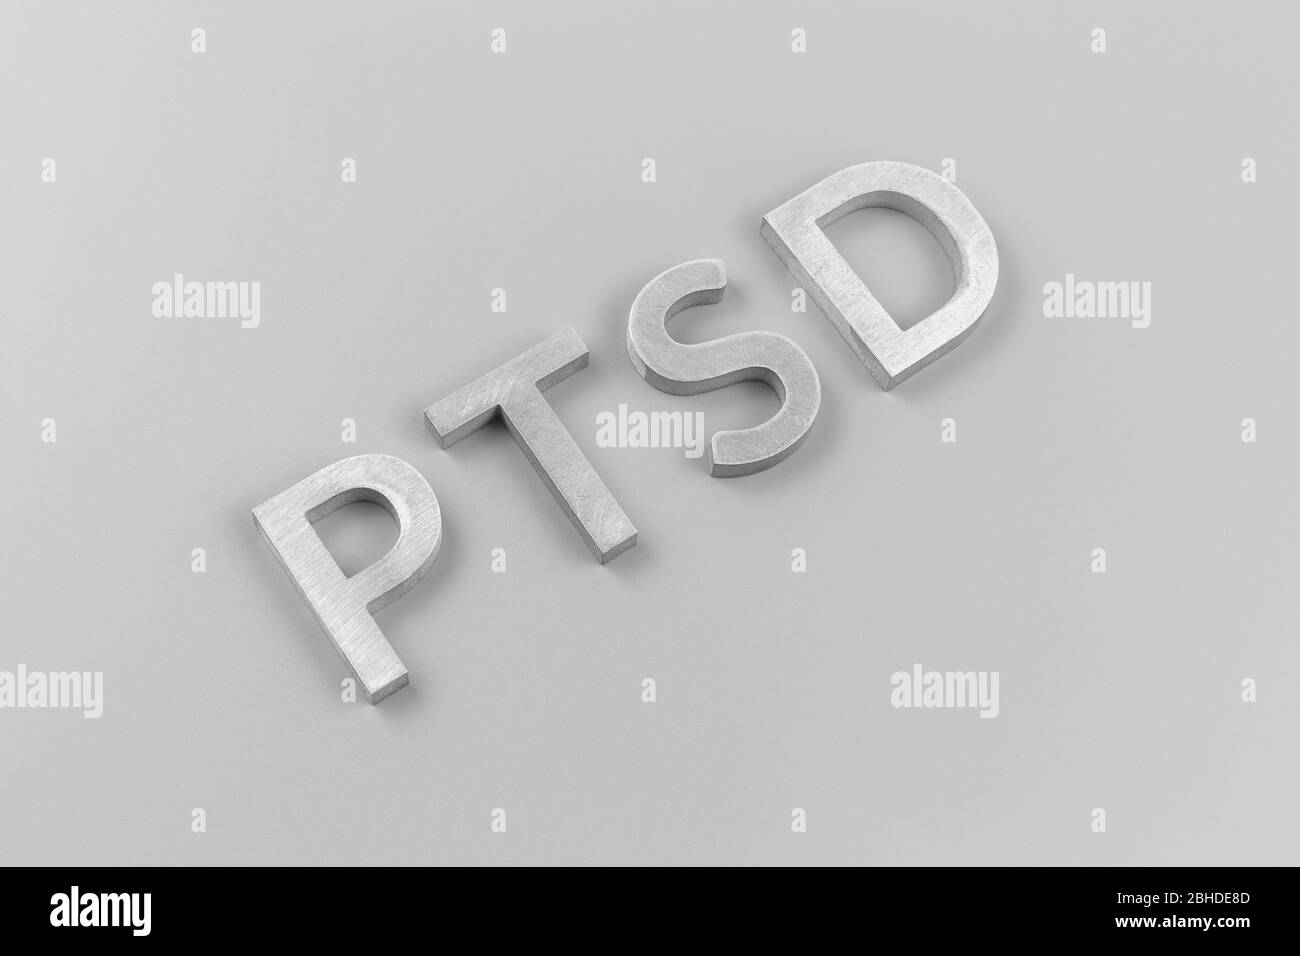 Une abréviation PTSD - syndrome de stress post-traumatique - posée avec des  lettres en métal argenté sur une surface plane gris clair Photo Stock -  Alamy